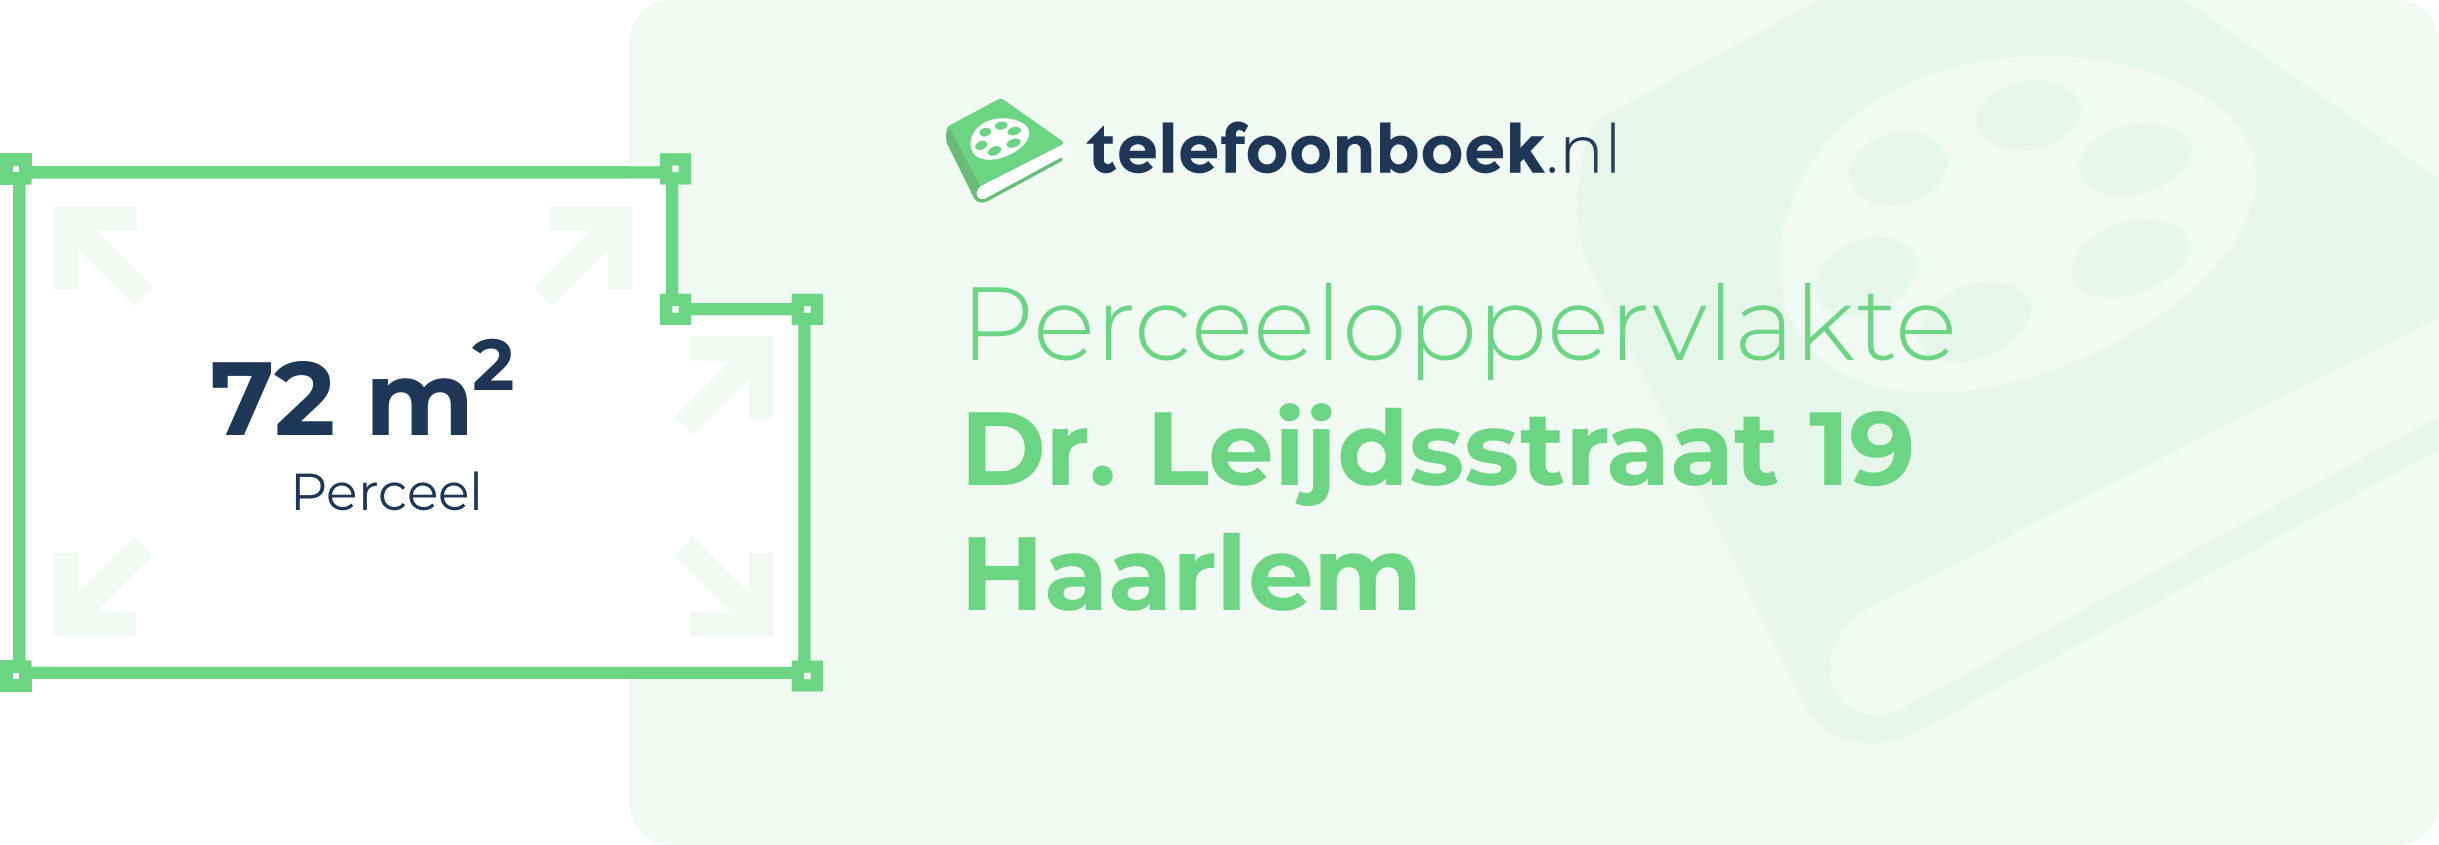 Perceeloppervlakte Dr. Leijdsstraat 19 Haarlem